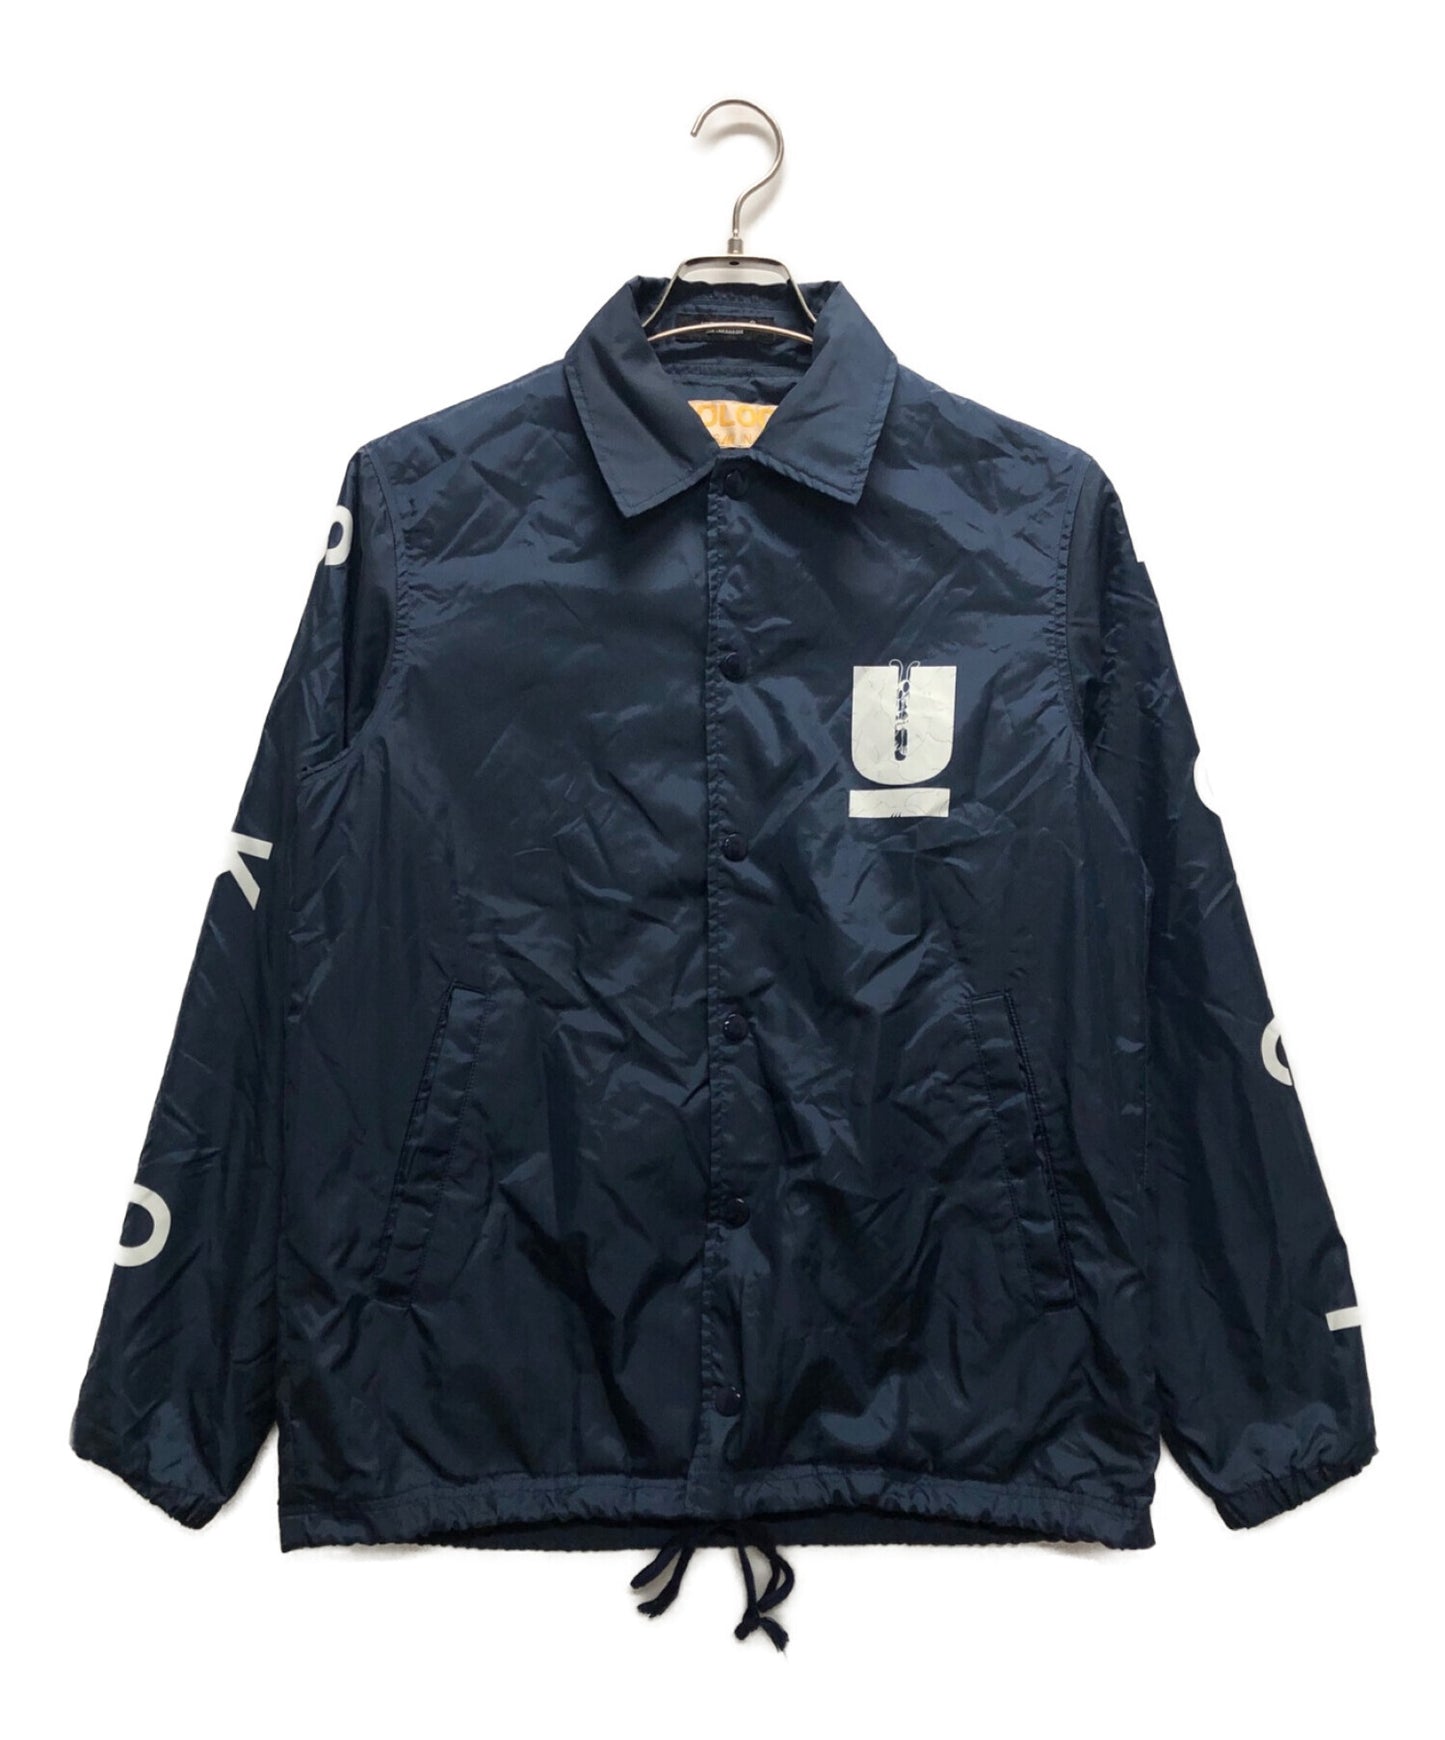 臥底×Skoloct 20SS背部印刷教練夾克UCT9207。